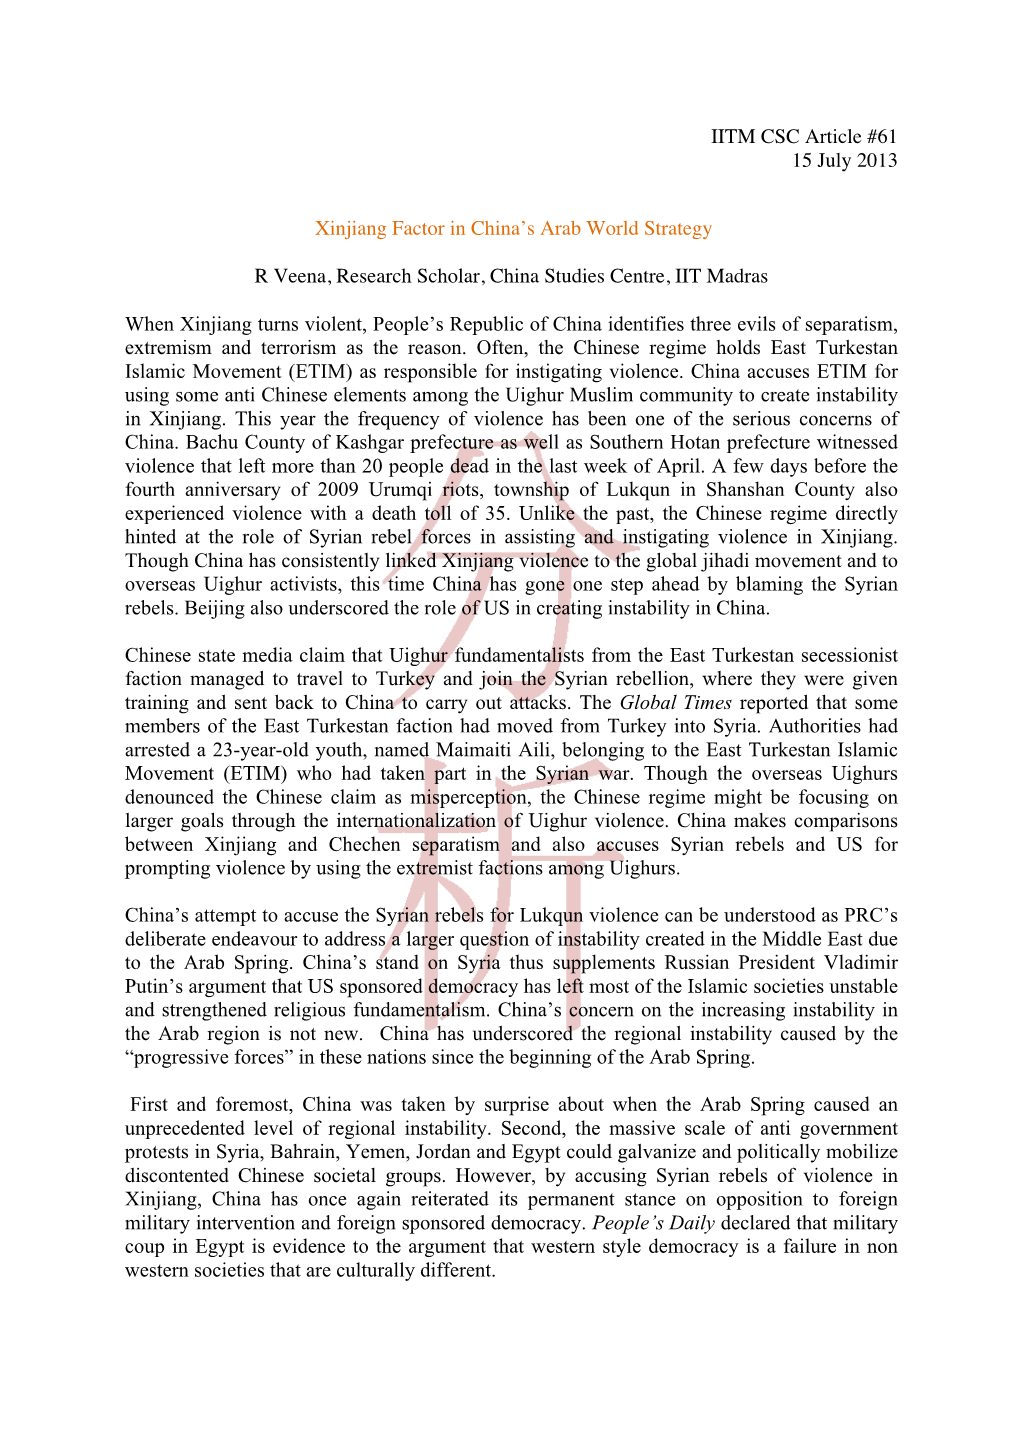 IITM CSC Article #61 15 July 2013 Xinjiang Factor in China's Arab